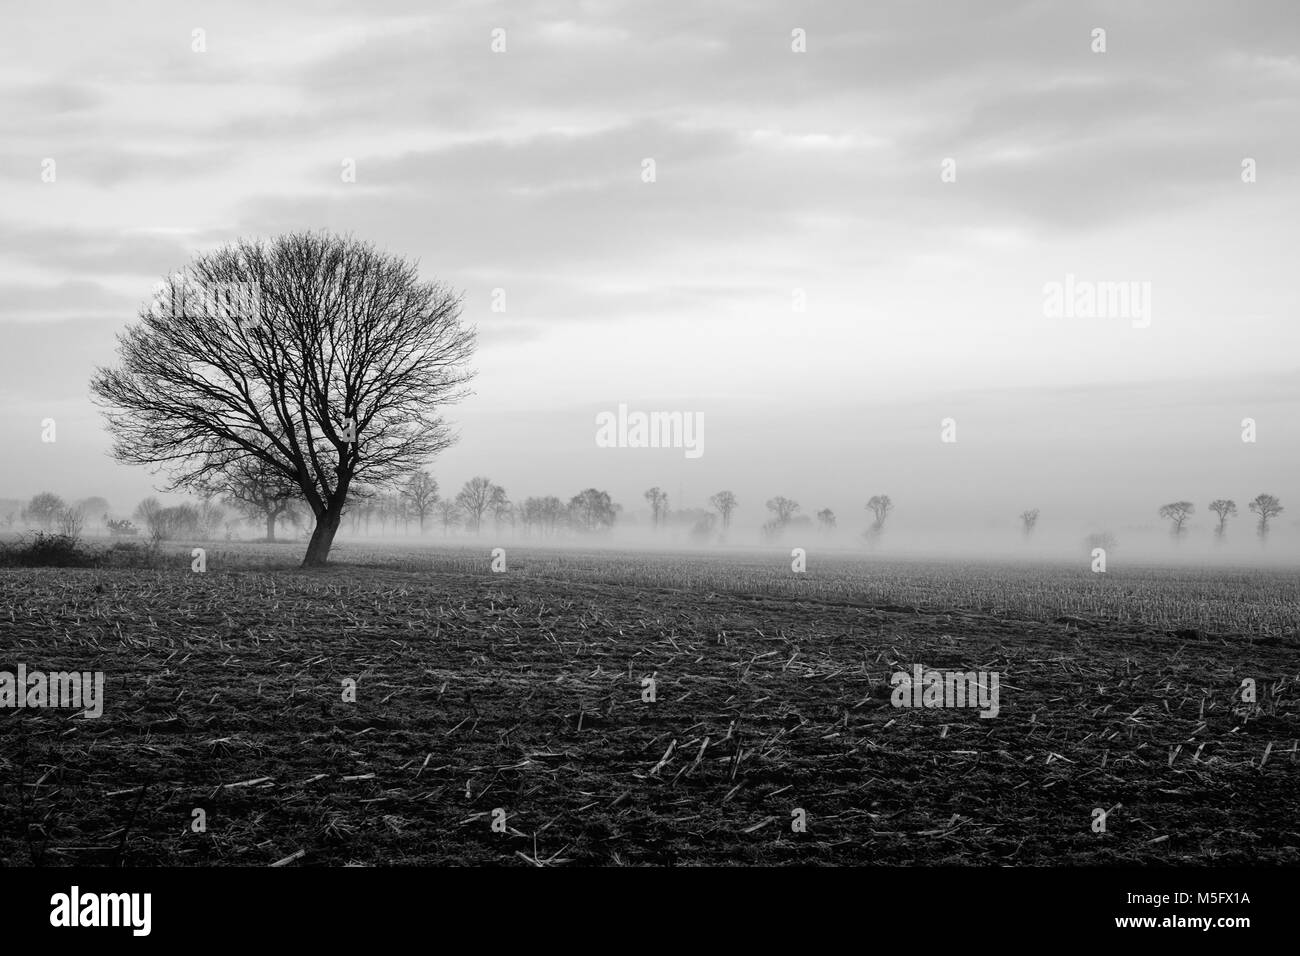 Immagine in bianco e nero di un solitario albero su di un campo con un cielo tempestoso su un paesaggio rurale paesaggio Foto Stock